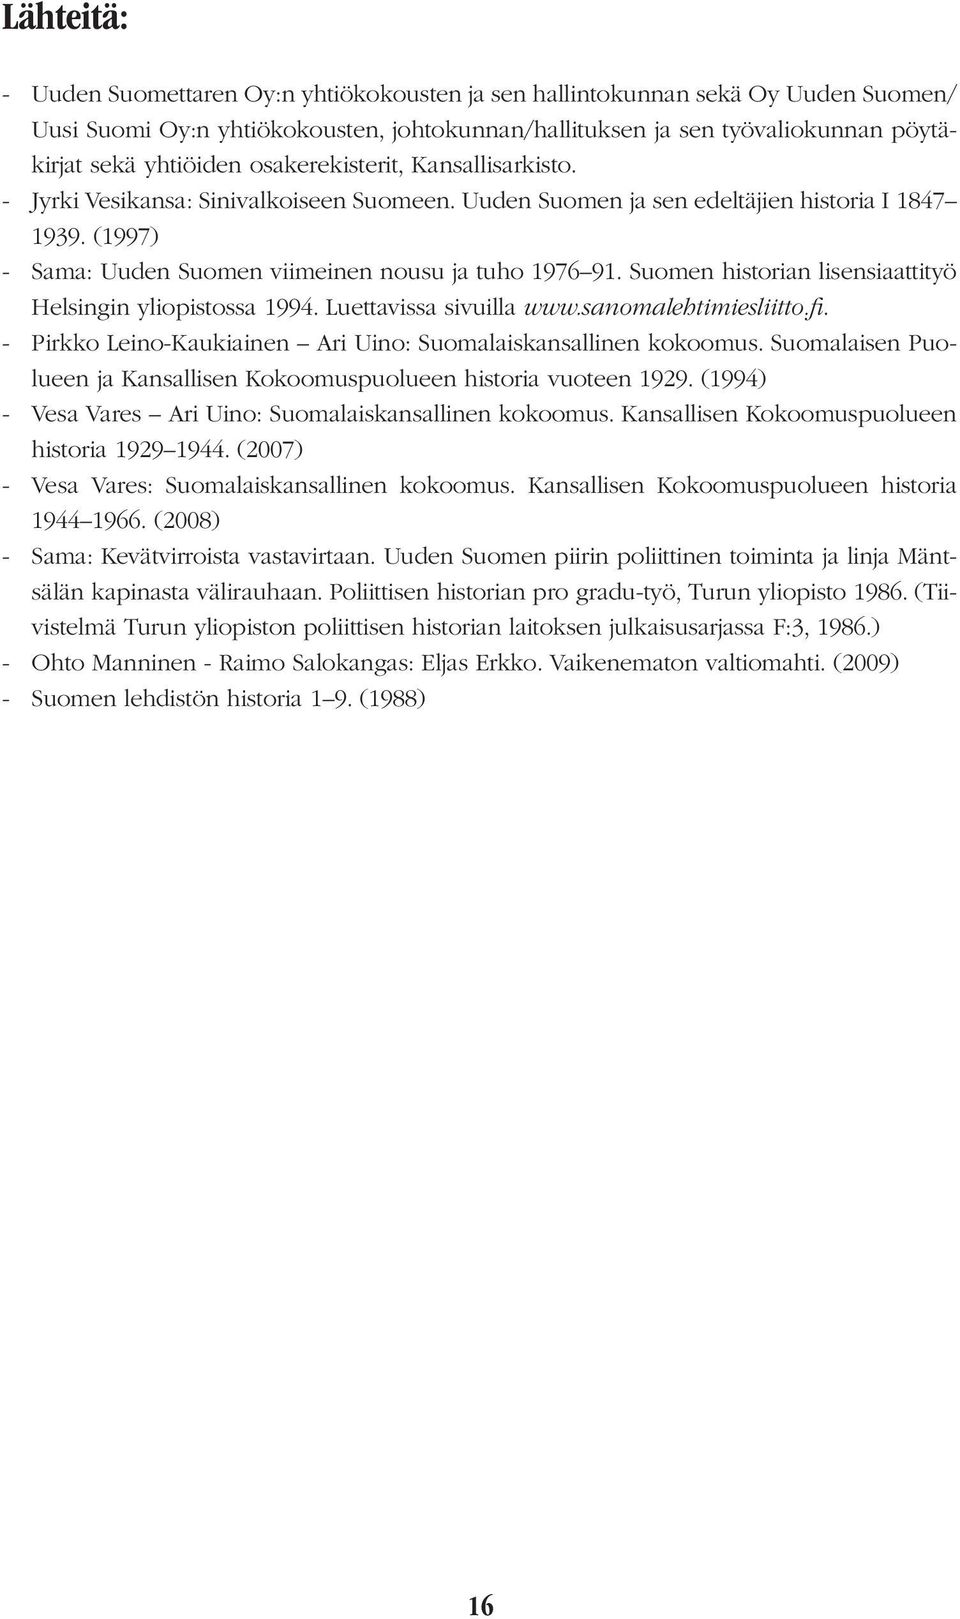 Suomen historian lisensiaattityö Helsingin yliopistossa 1994. Luettavissa sivuilla www.sanomalehtimiesliitto.fi. - Pirkko Leino-Kaukiainen Ari Uino: Suomalaiskansallinen kokoomus.